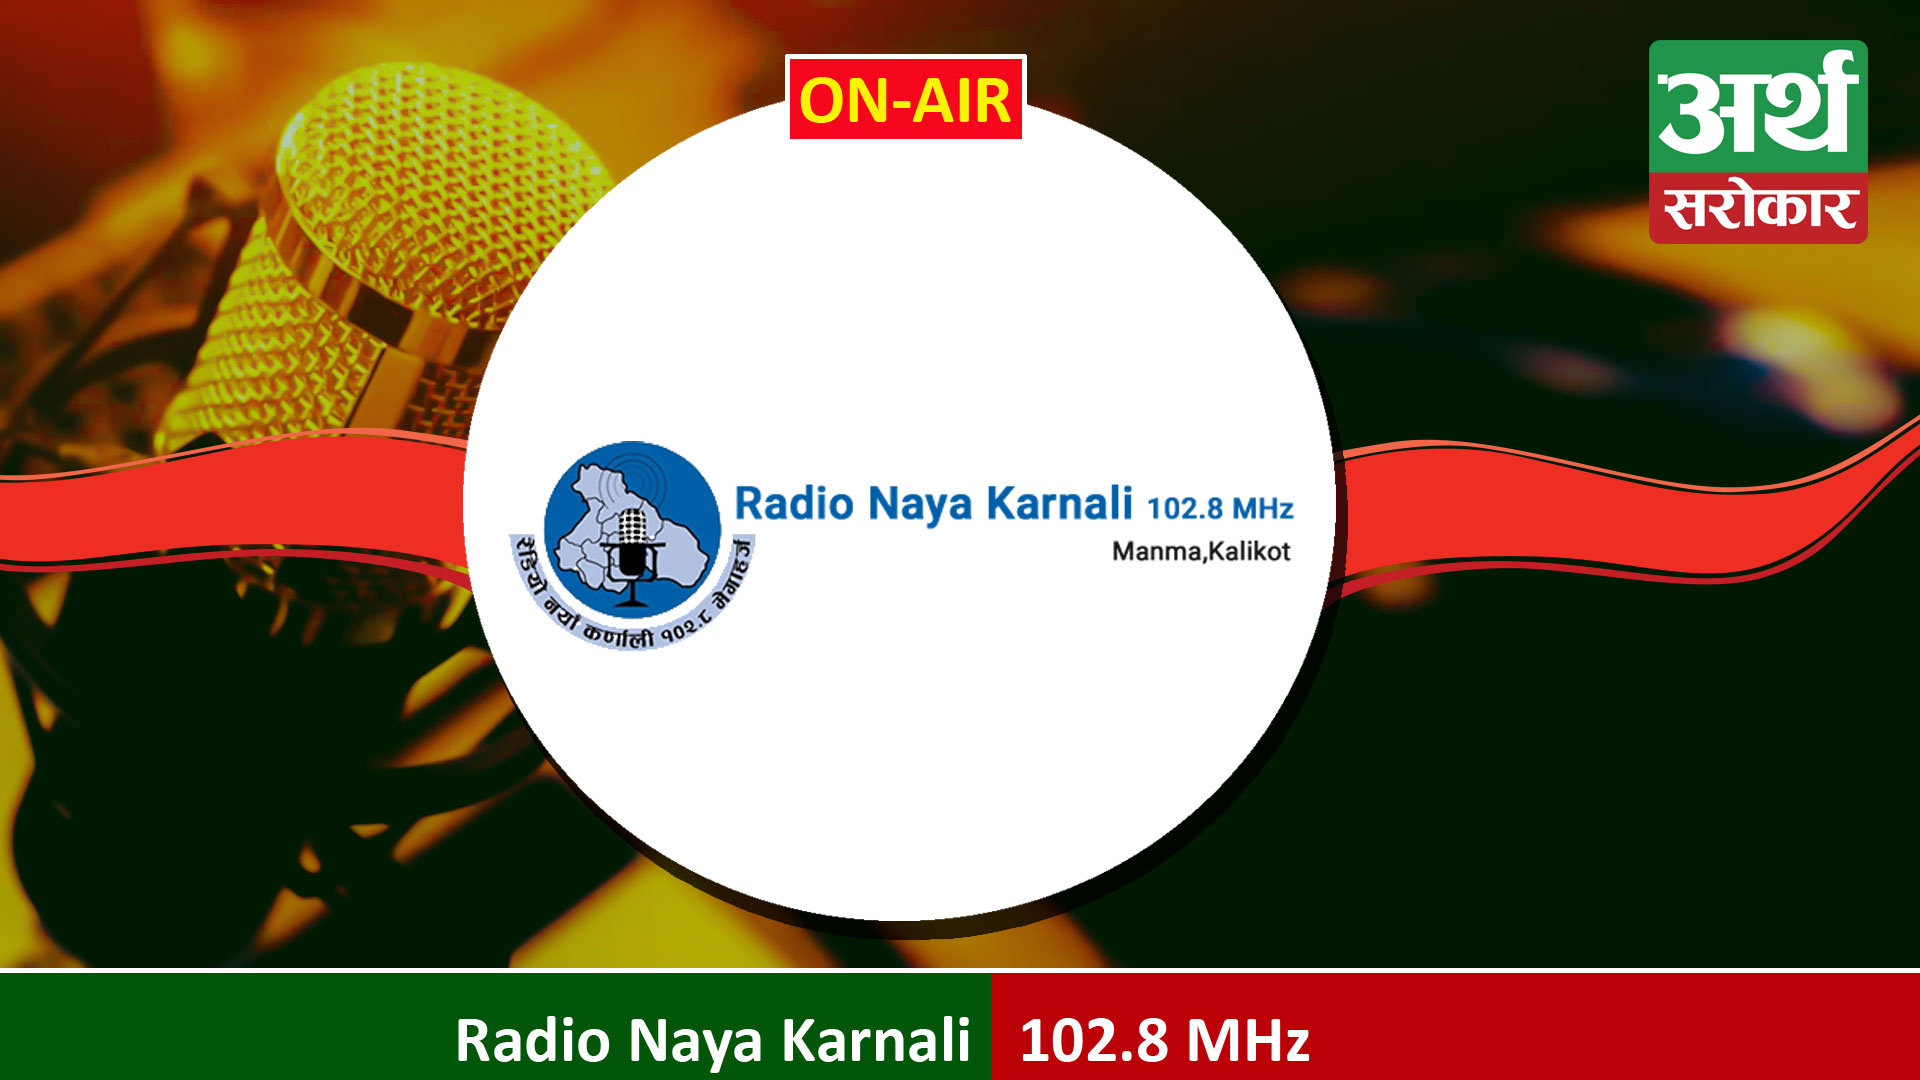 Radio Naya Karnali 102.8 MHz